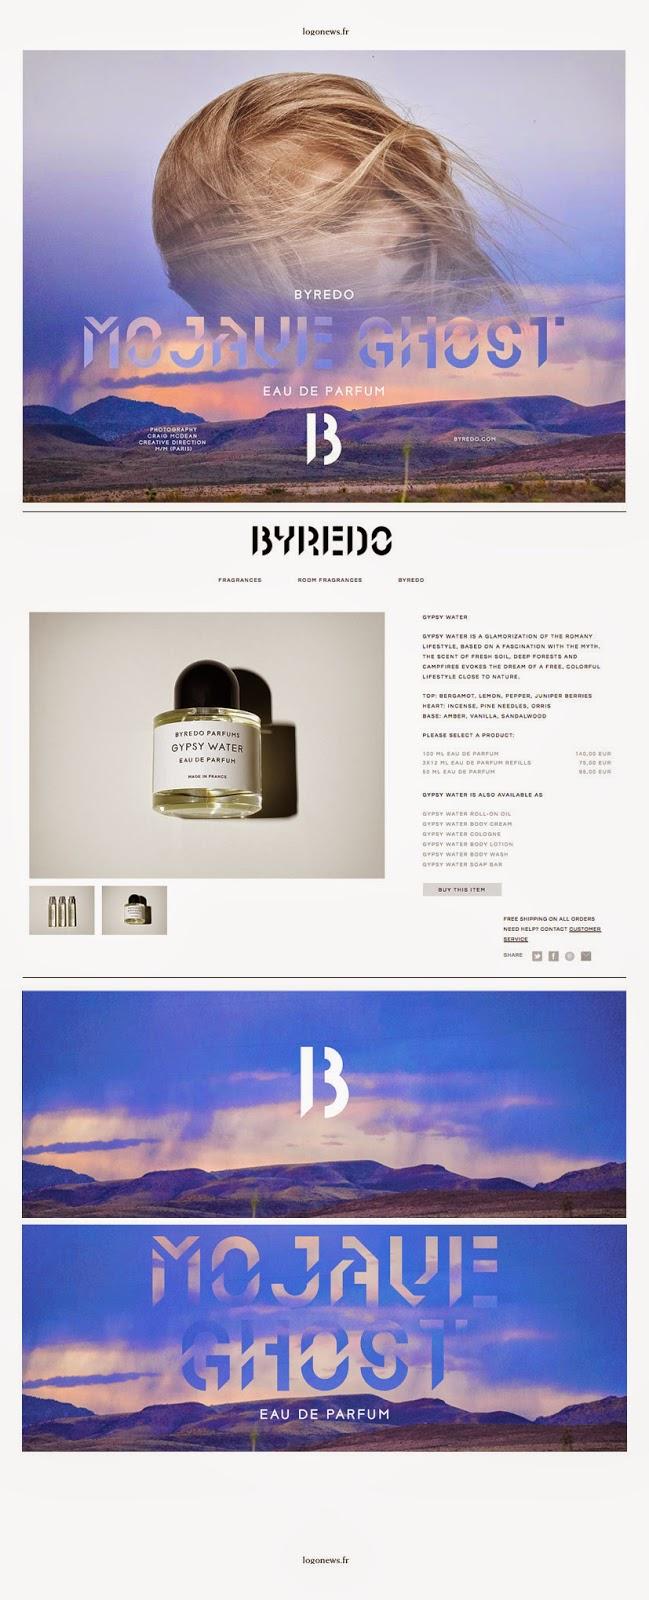 L'incroyable Byredo, parfum de niche suédois, change d'identité visuelle